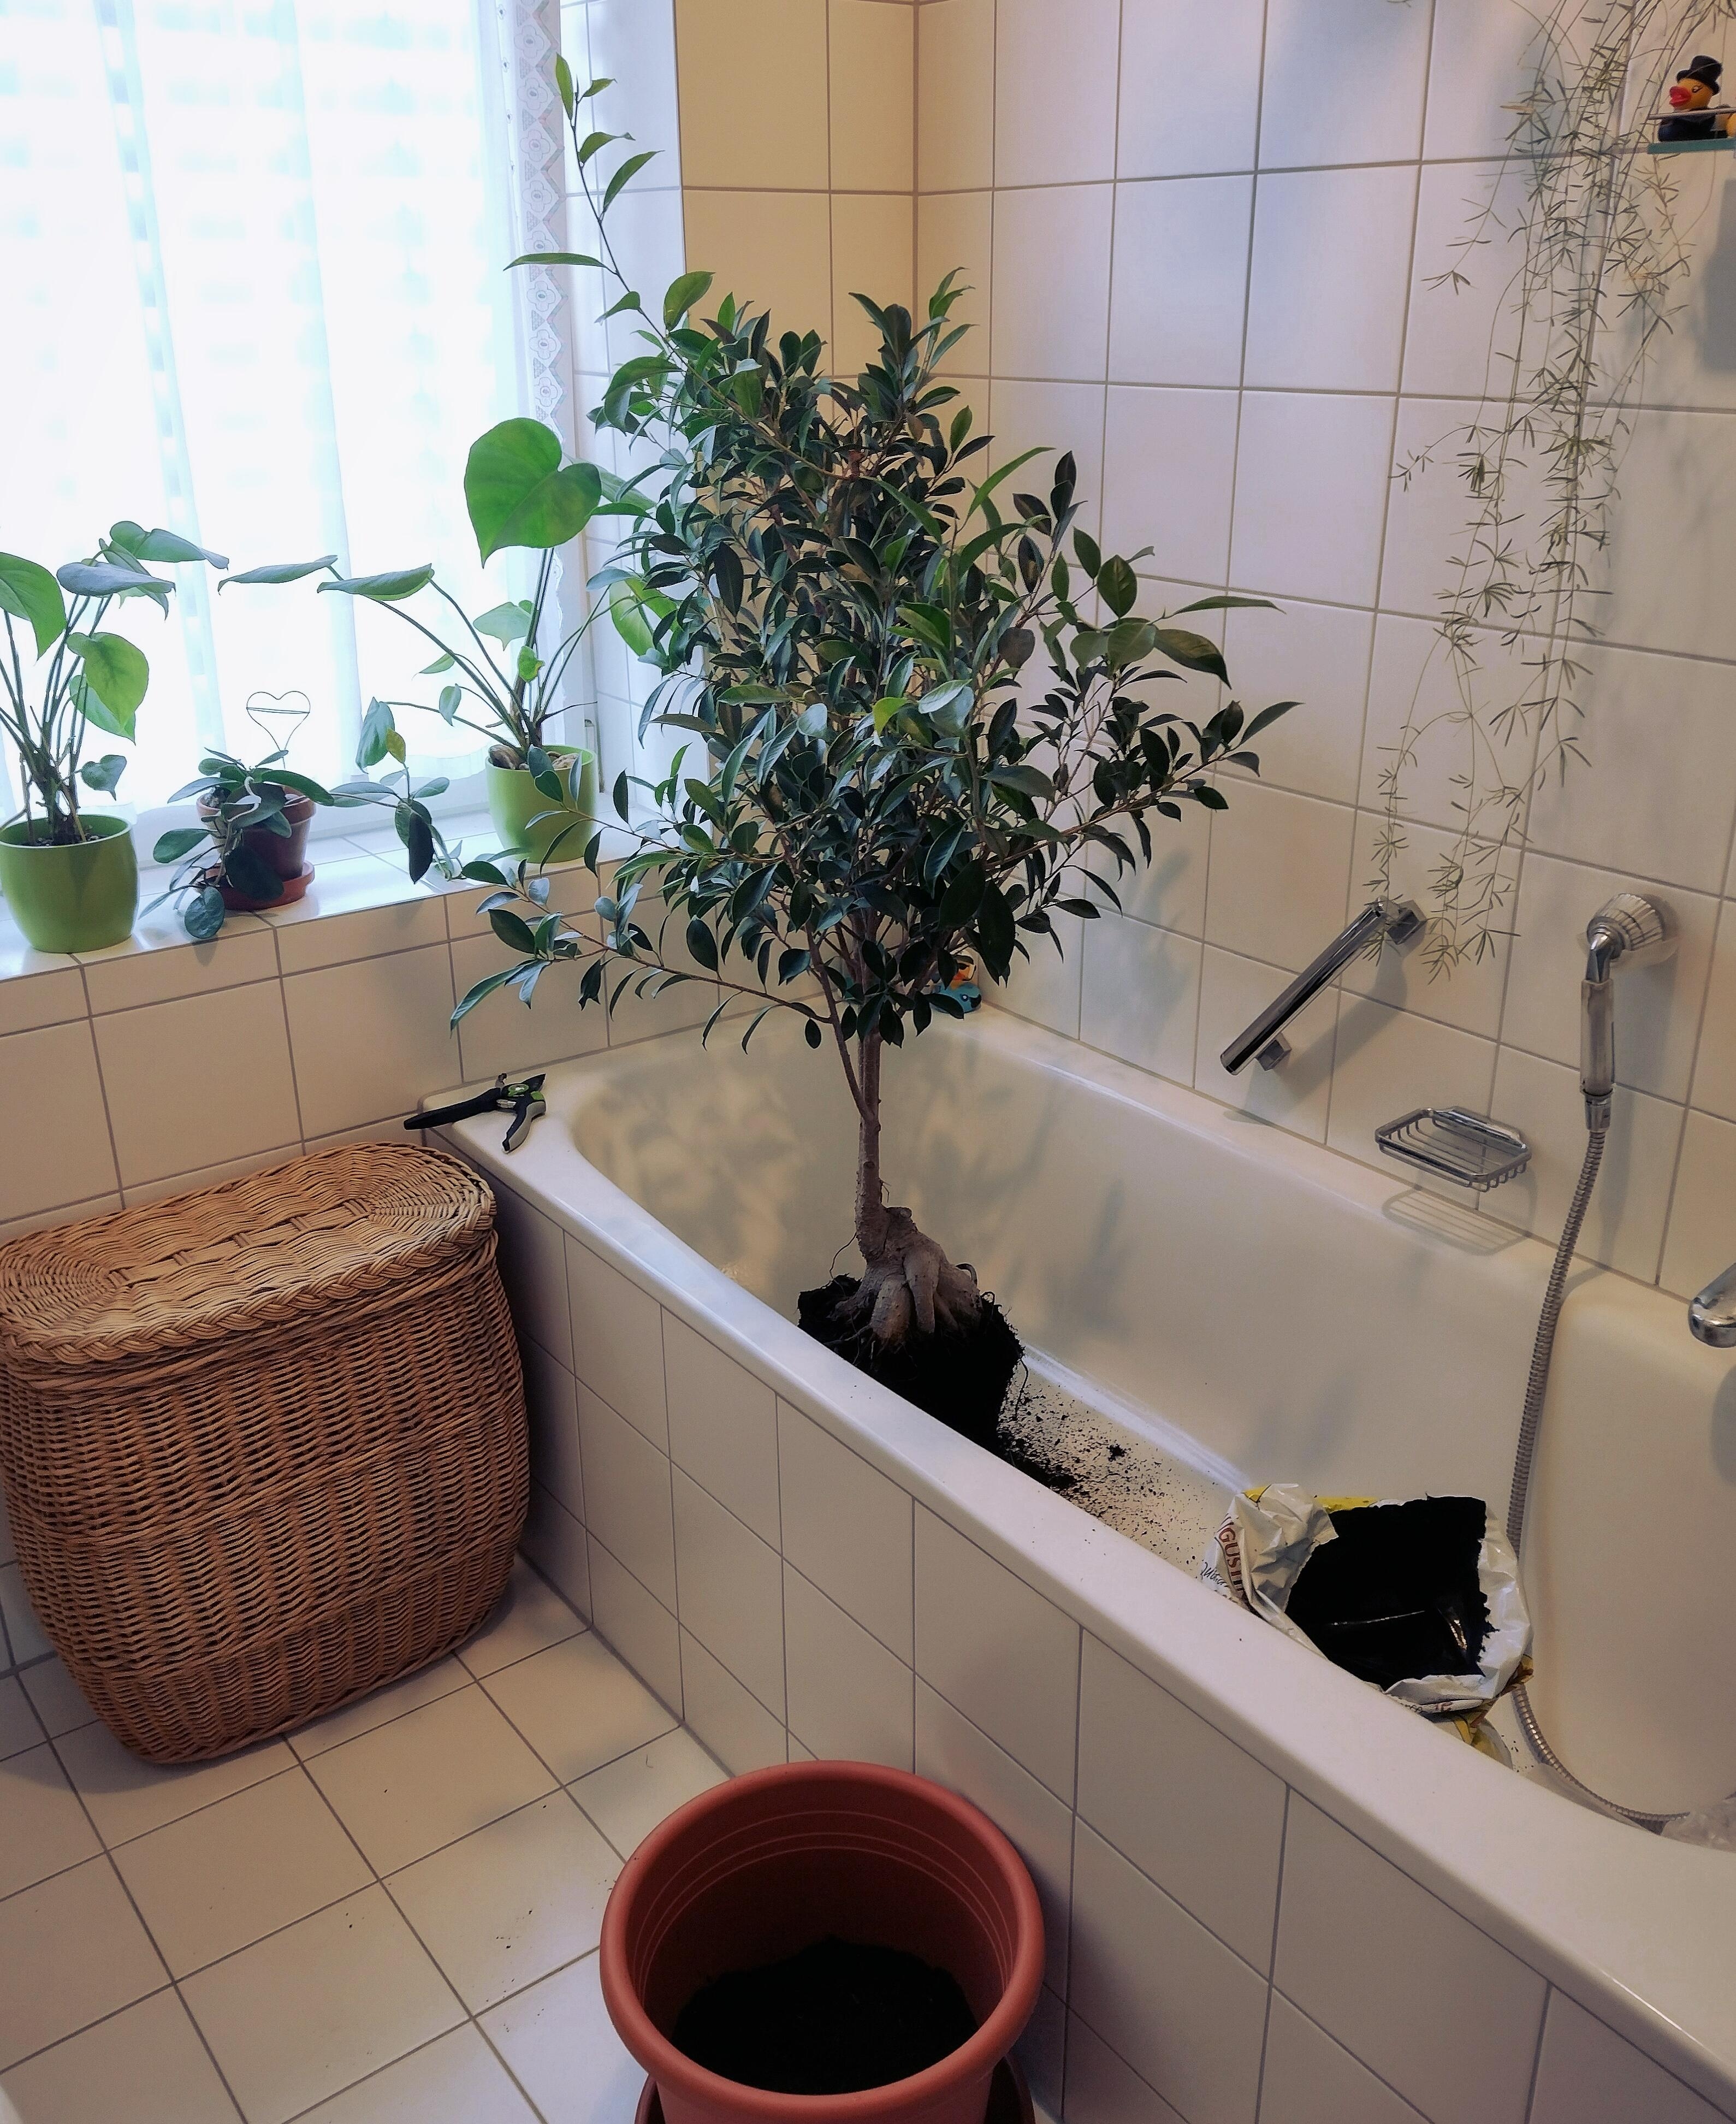 #badezimmer zweckentfremdet 🫣😅
#pflanzenliebe #zimmerpflanze #baum